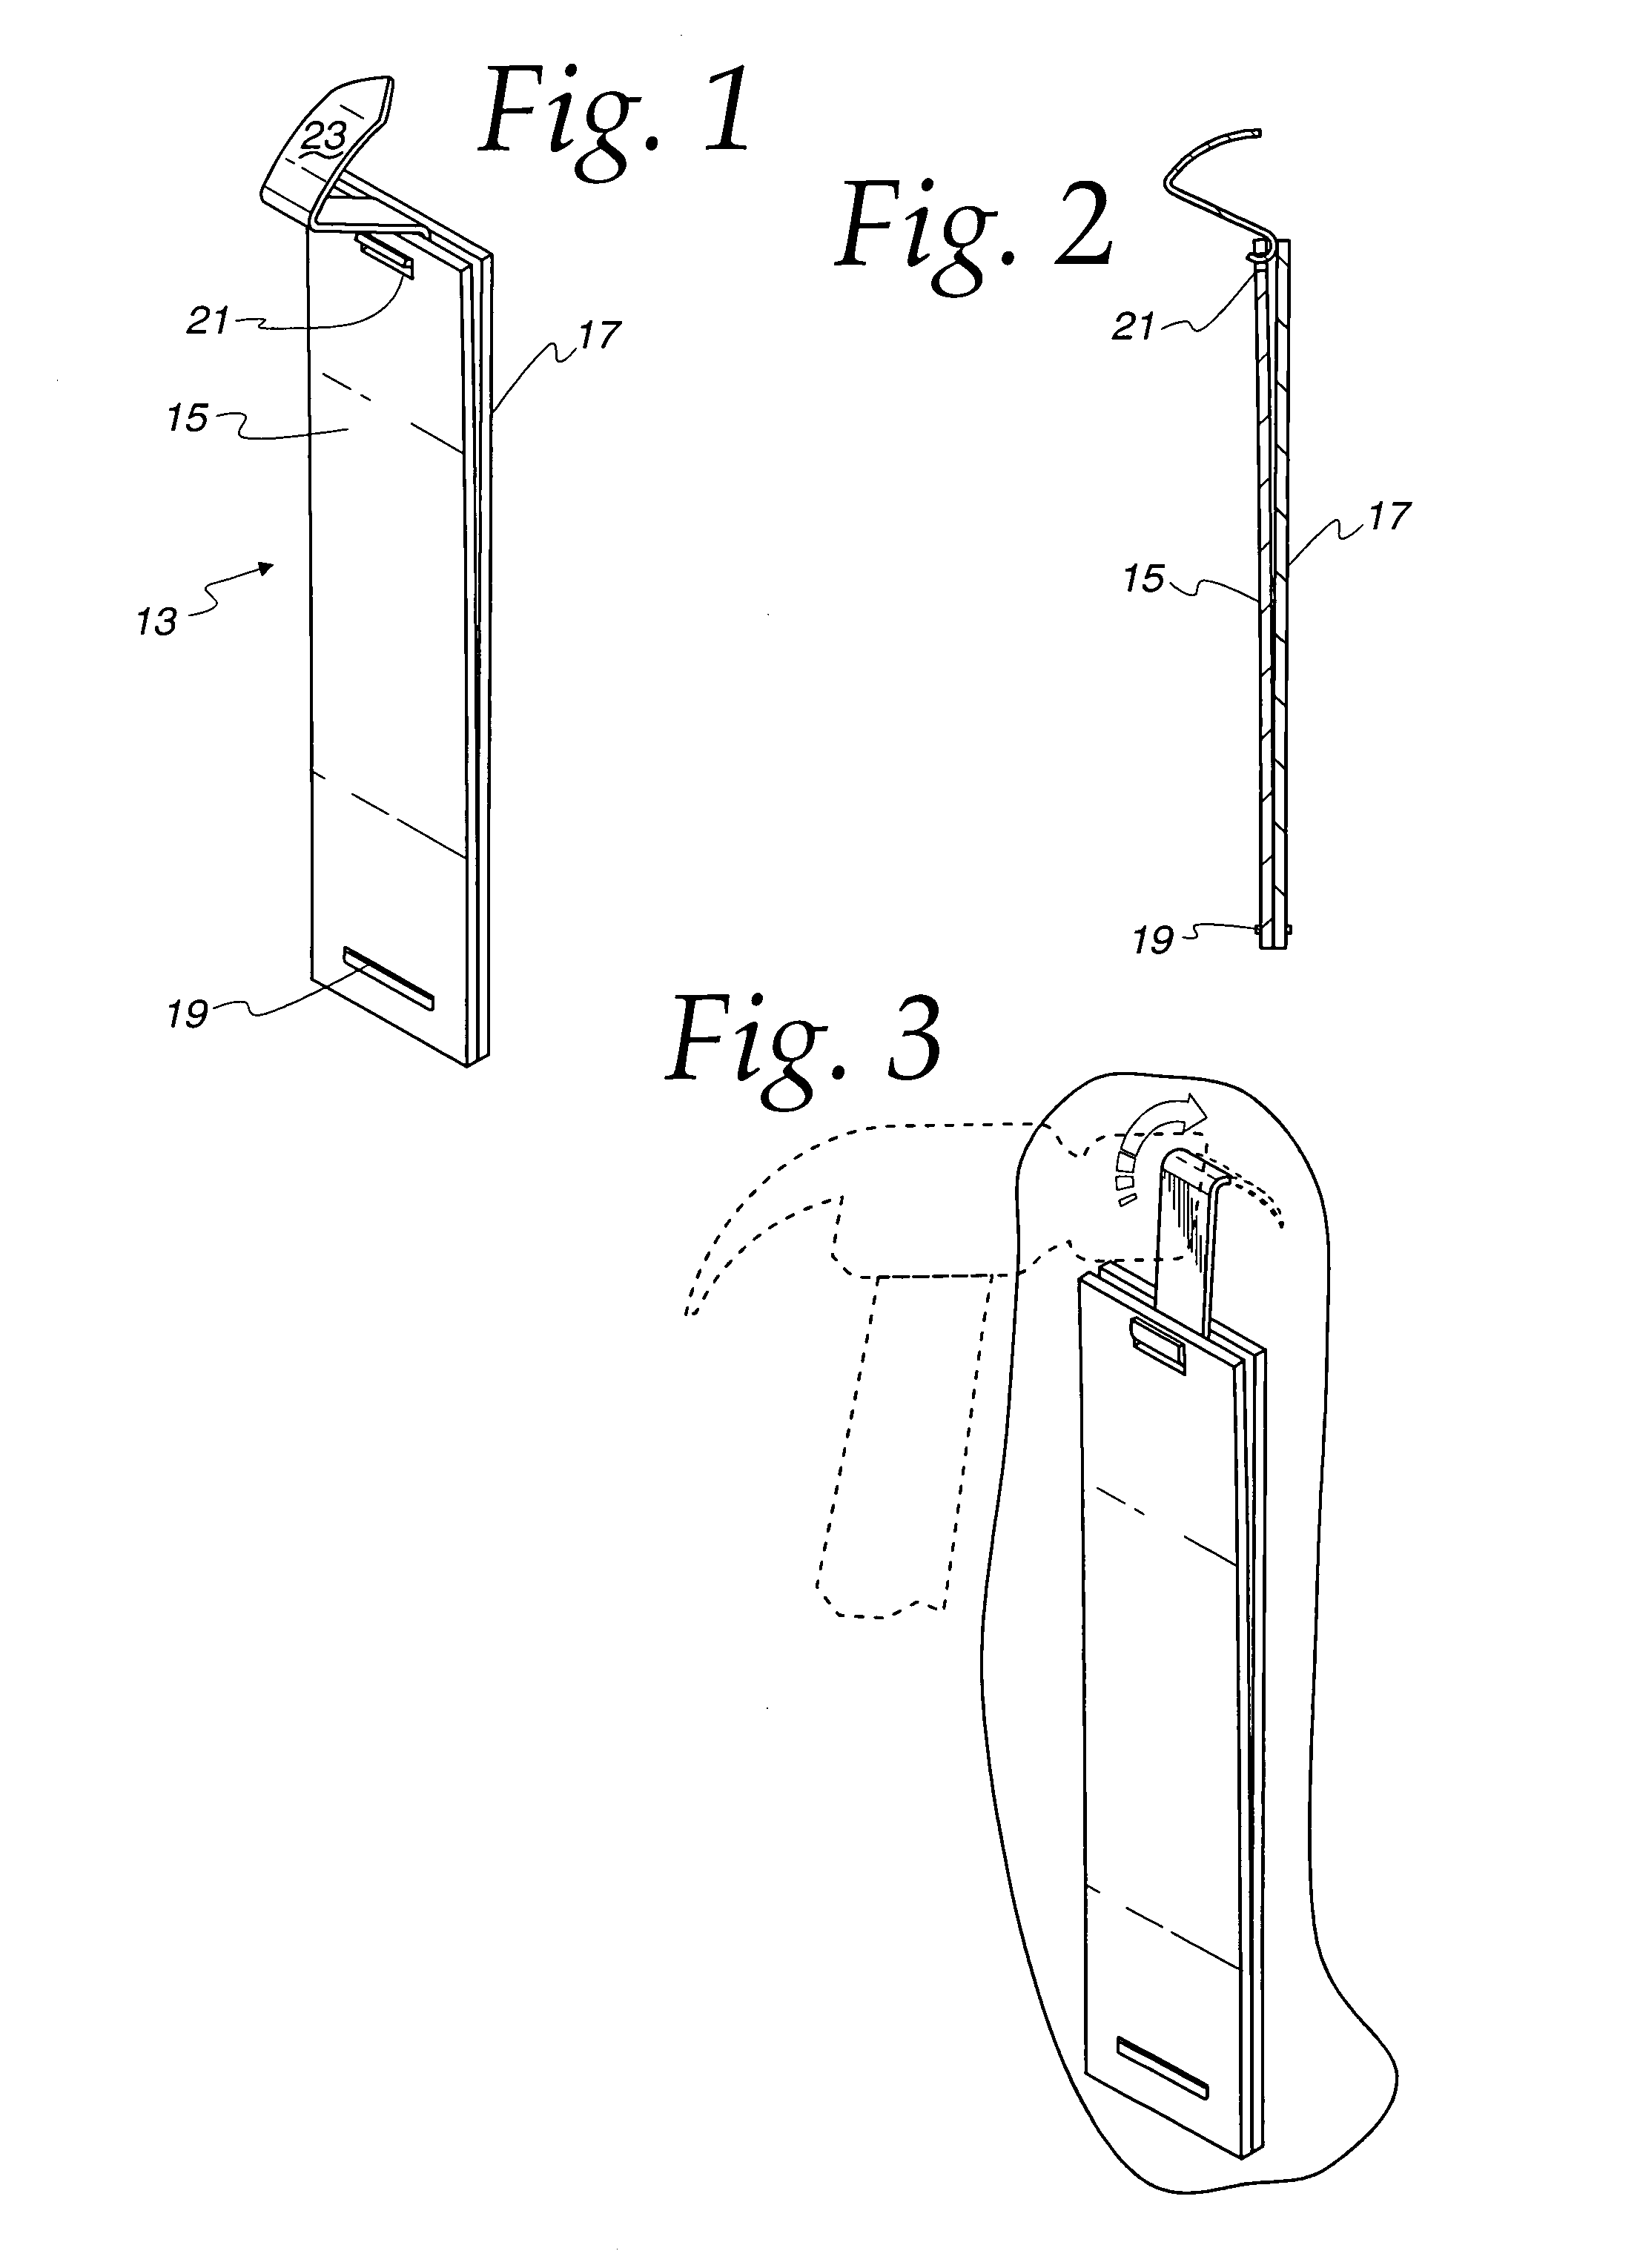 Insertion tool for drywall hanger